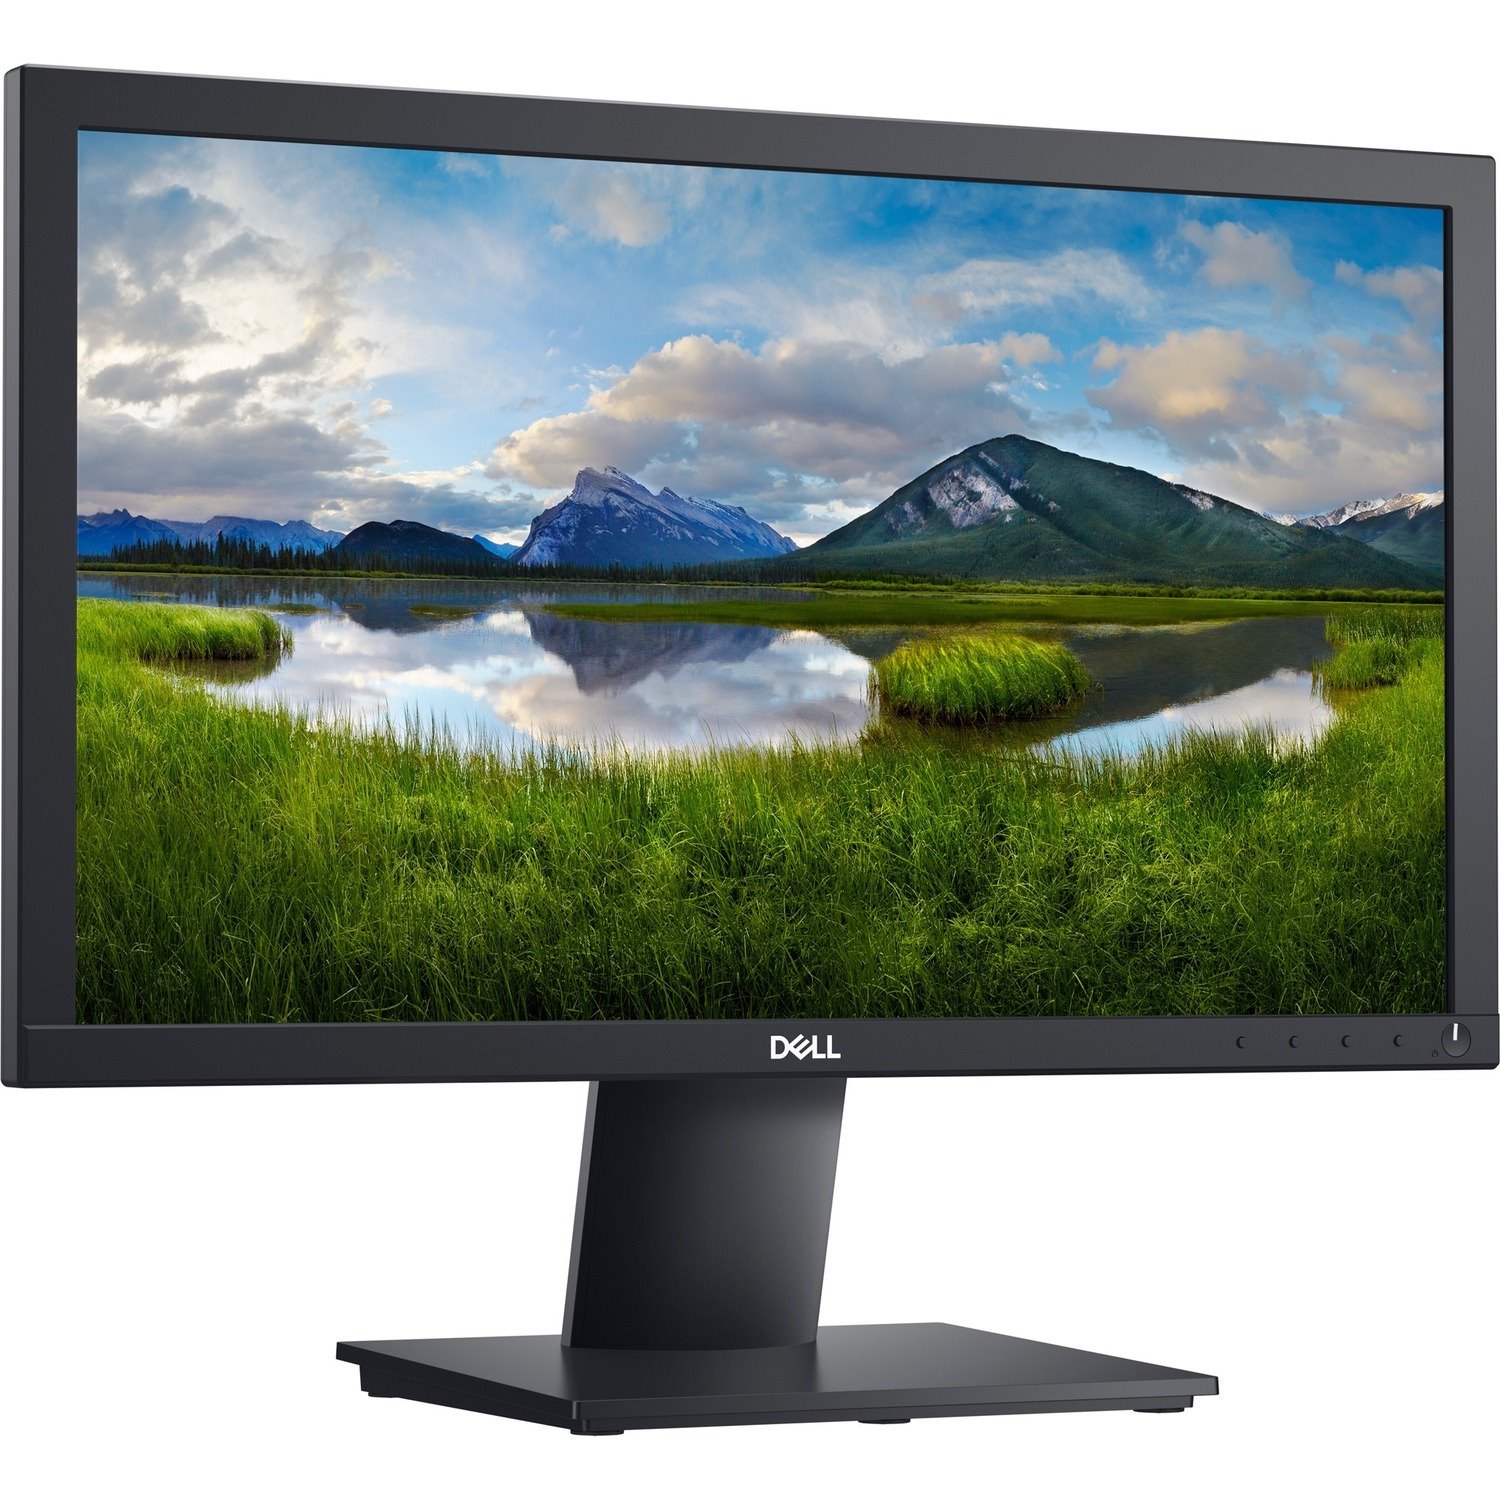 Dell E1920H 19" WUXGA LED LCD Monitor - 16:9 - Black